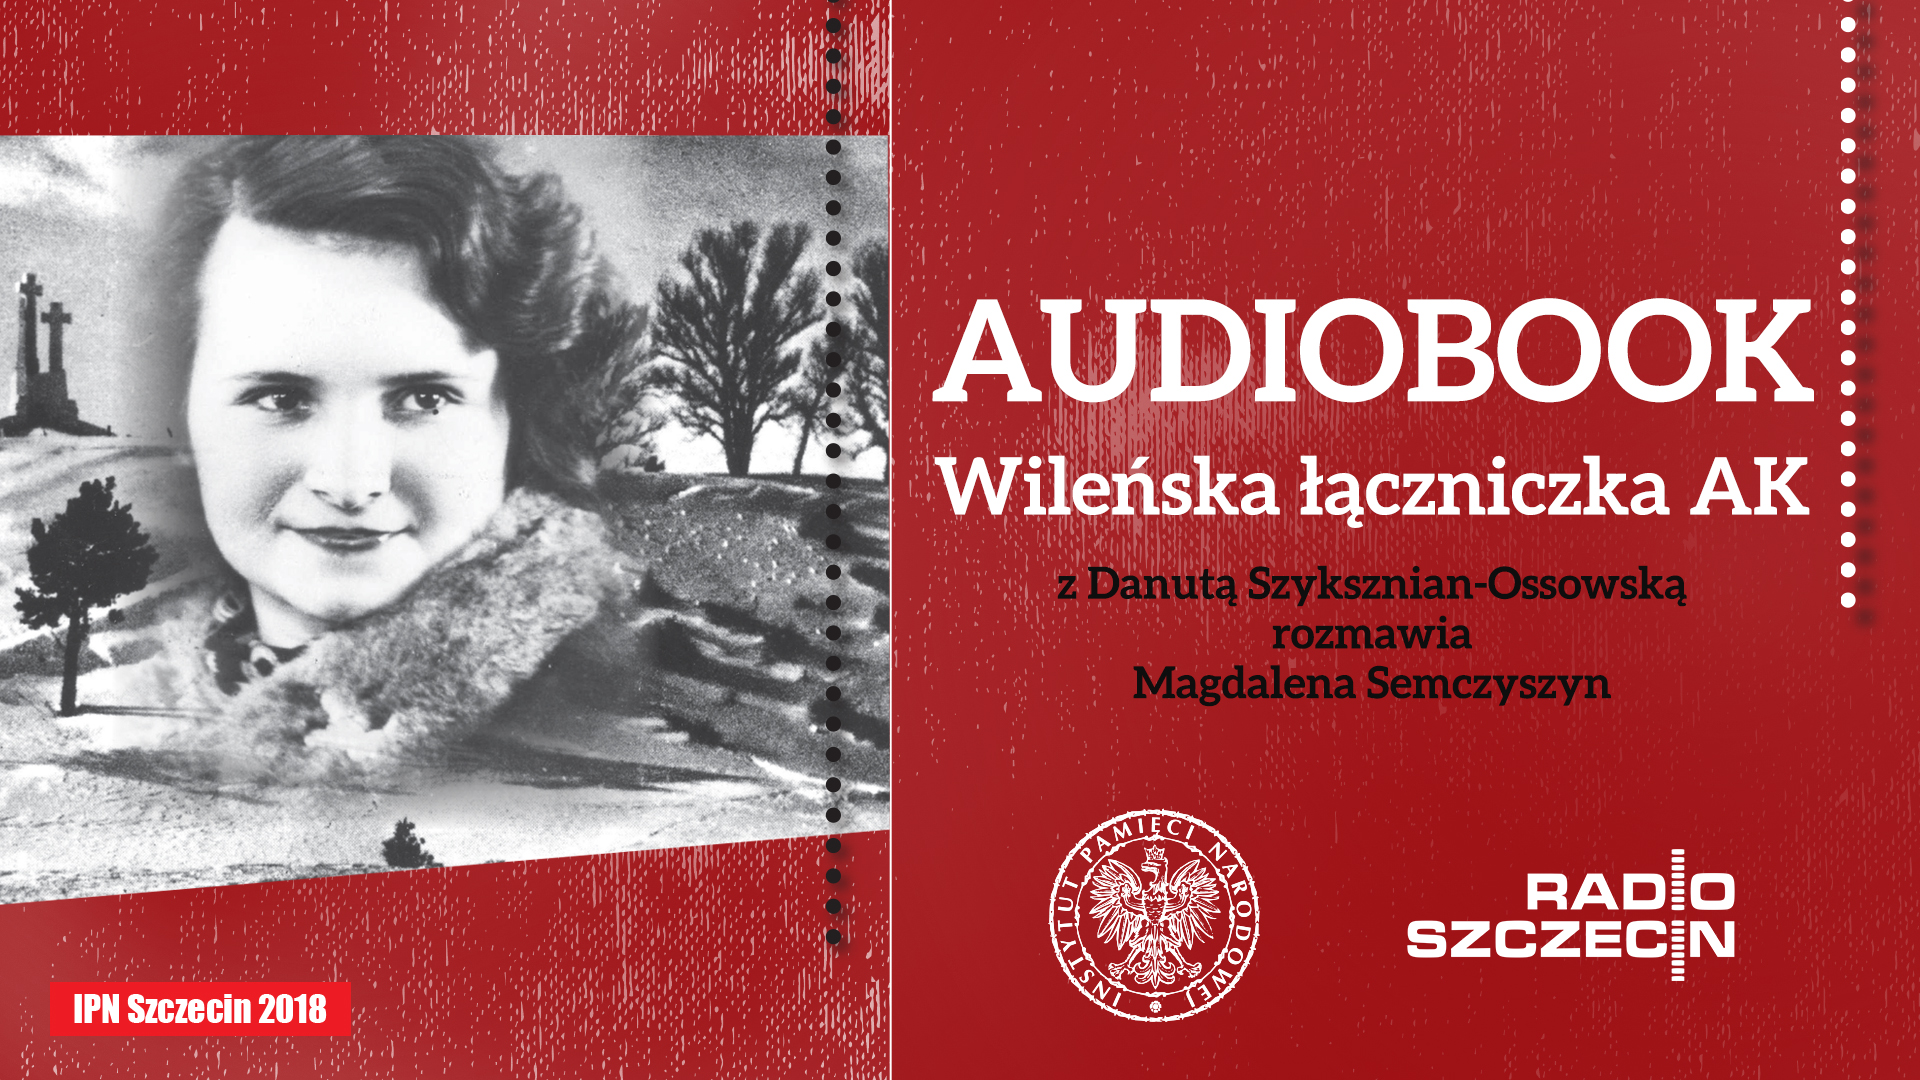 Audiobook opowiada o wojnie i działalności konspiracyjnej, a także o okupacji, śledztwie, obozie i powojennej Polsce. Graf. IPN Szczecin